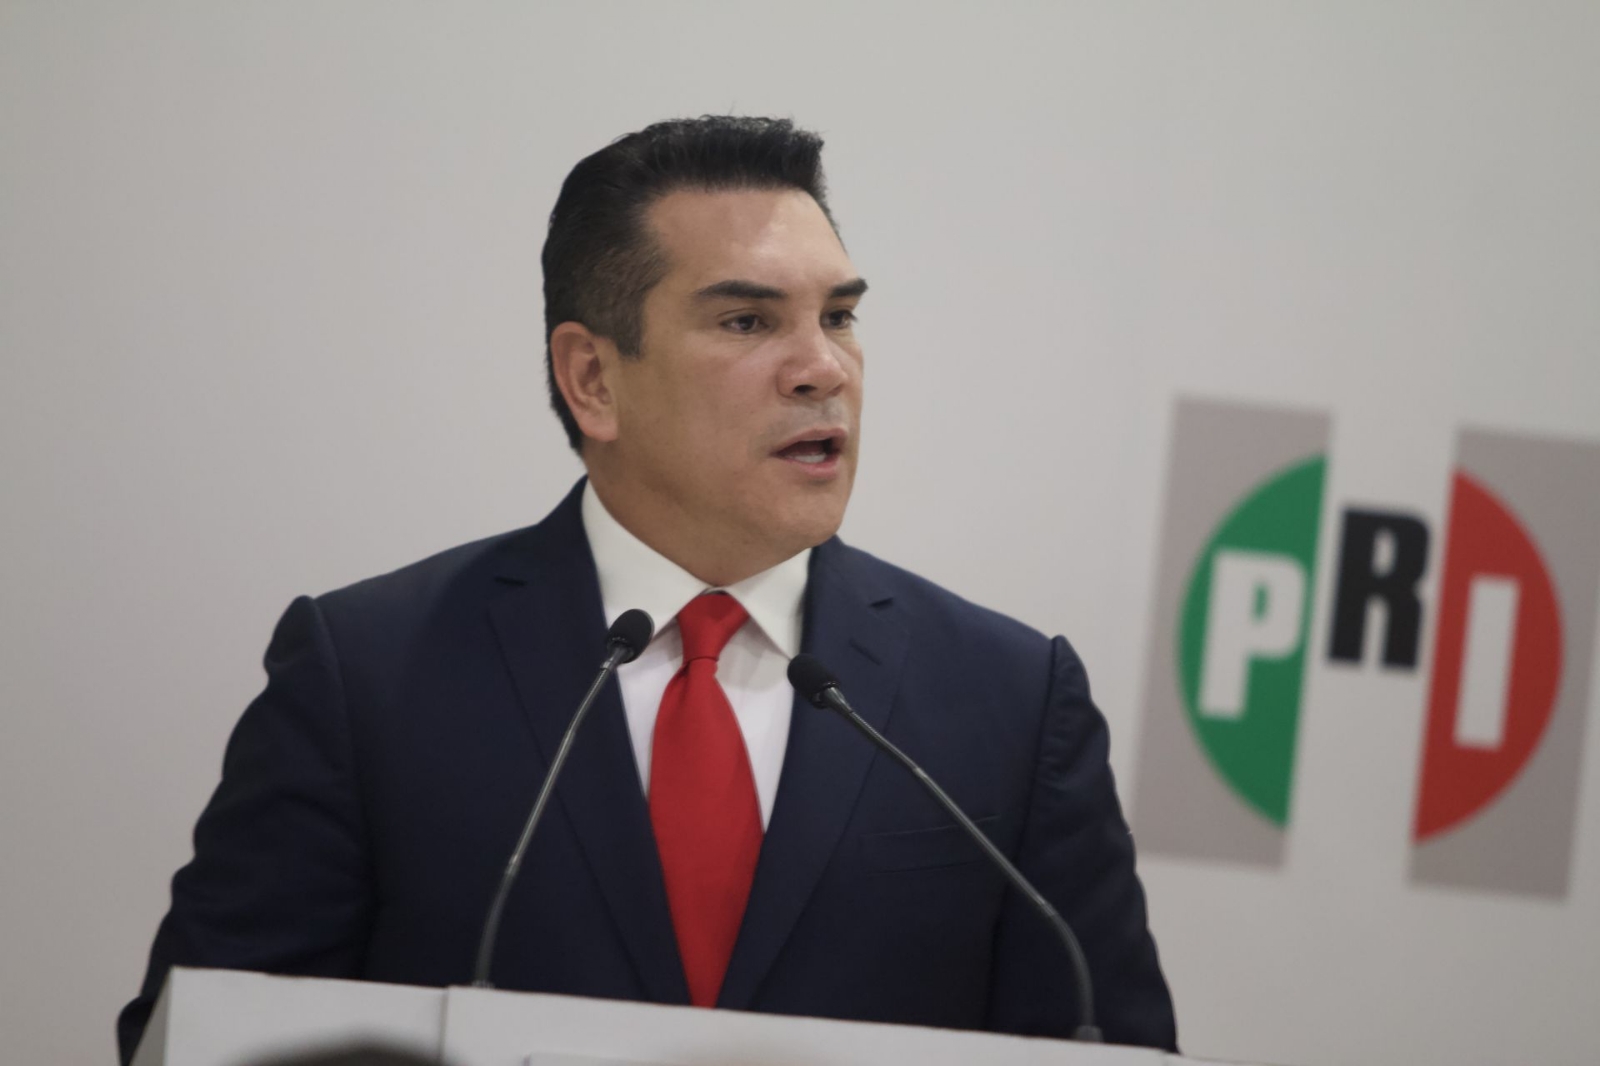 'Alito' Moreno, exgobernador de Campeche, niega compra de terrenos a 4 pesos el metro